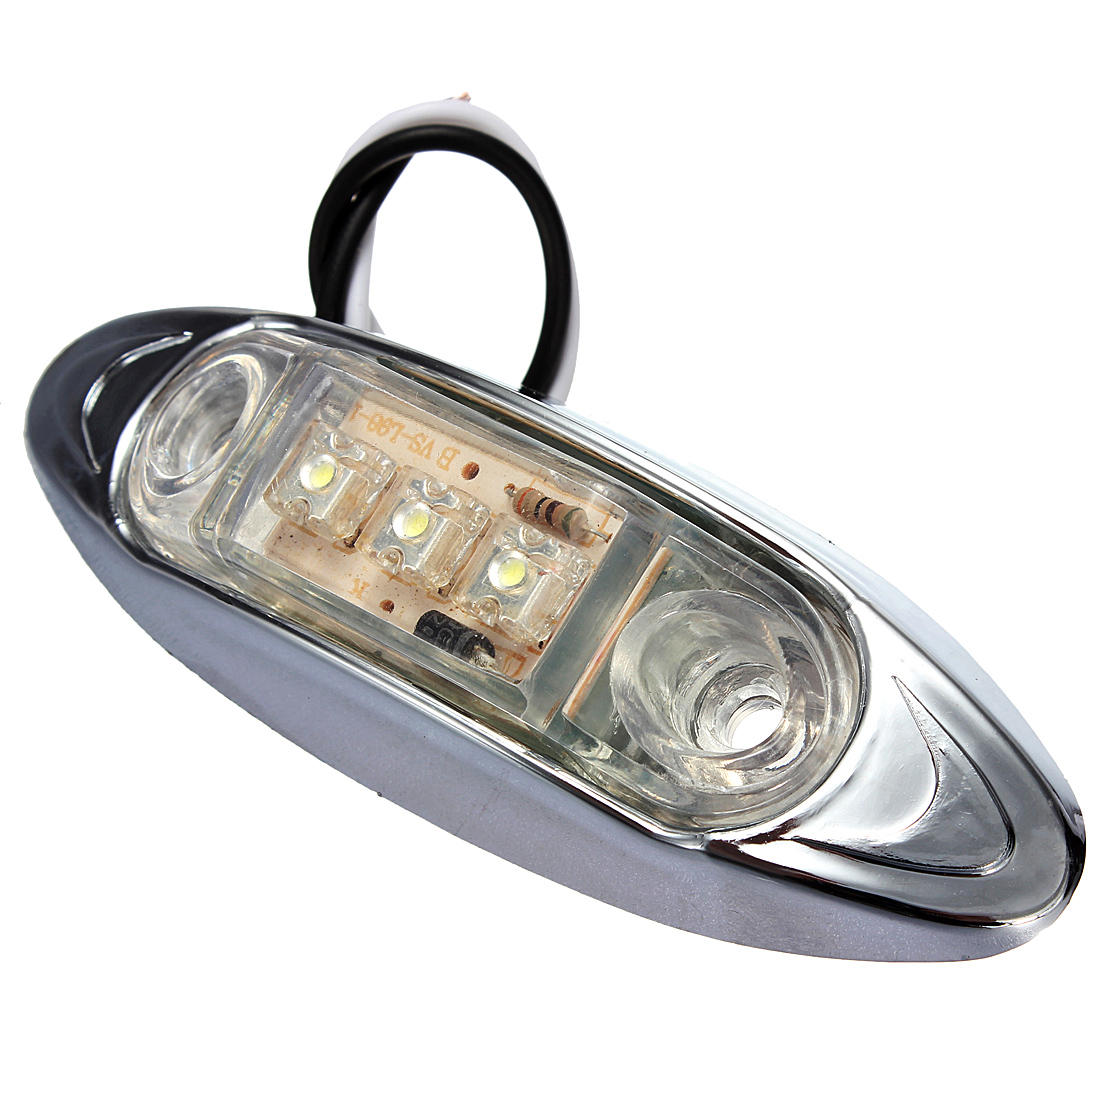 Waterproof-12V-LED-Side-MarkerClearance-Light-for-TruckTrailer-82016